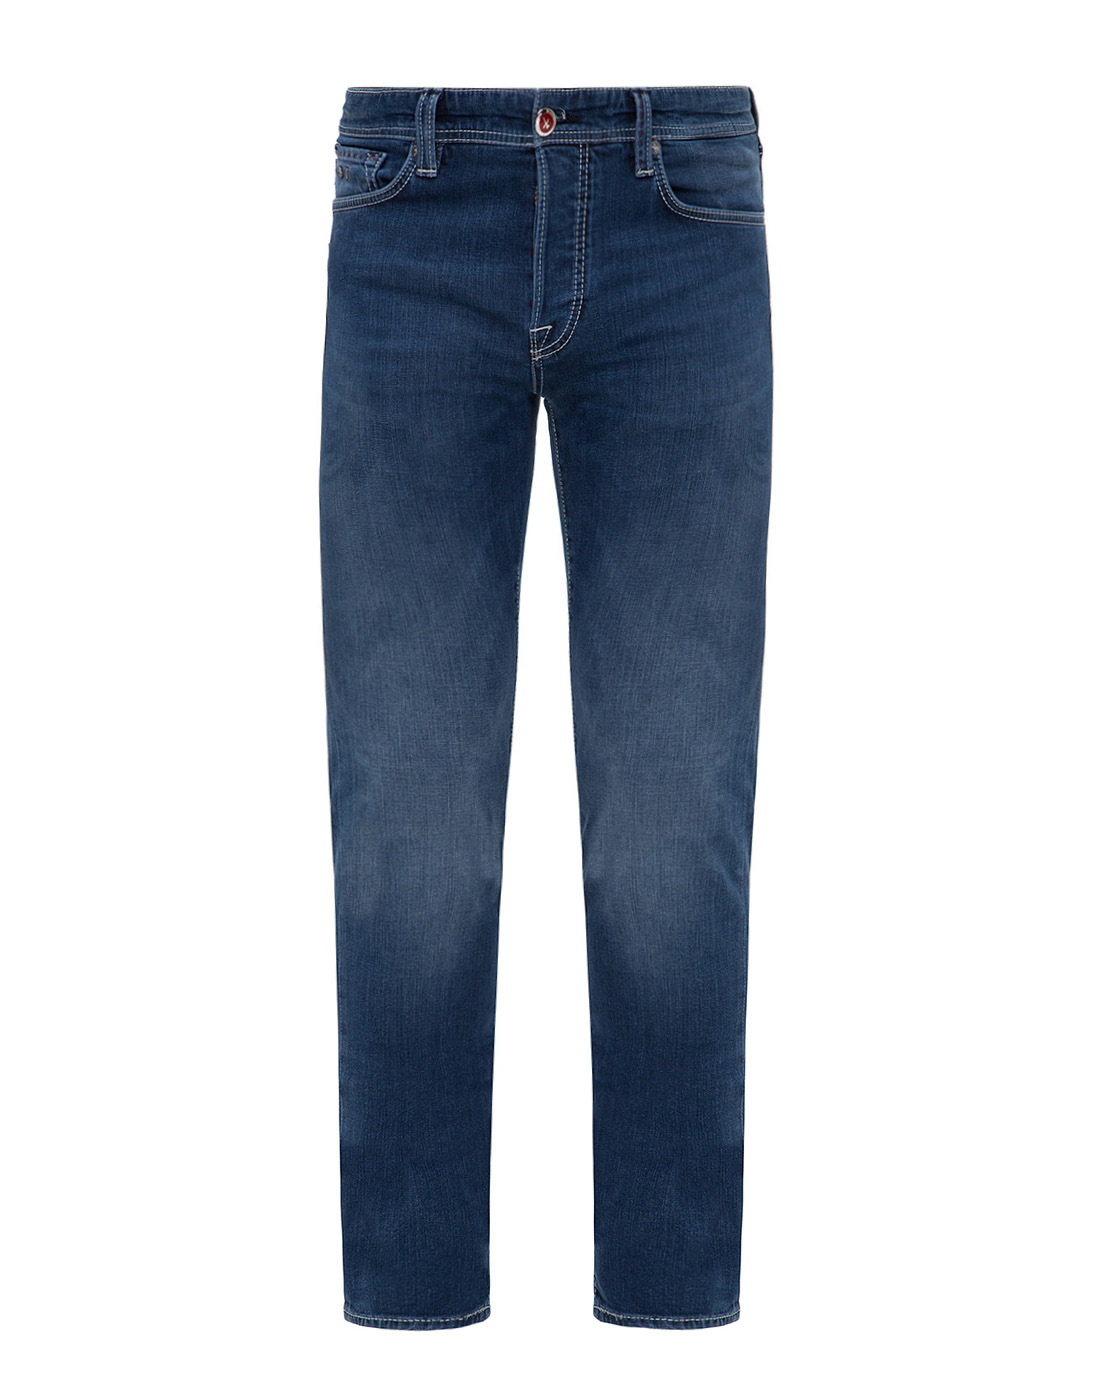 Мужские темно-синие джинсы Leonardo Tramarossa SD361 12MON LEO-1